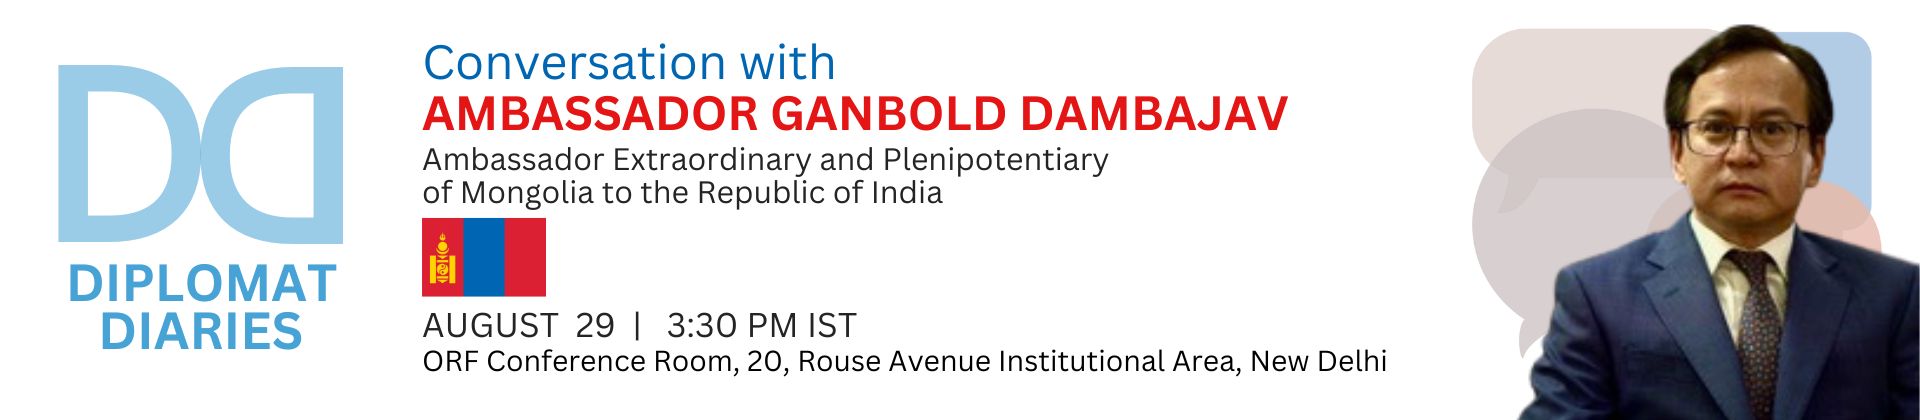 Diplomat Diaries | Conversation with Ambassador Ganbold Dambajav